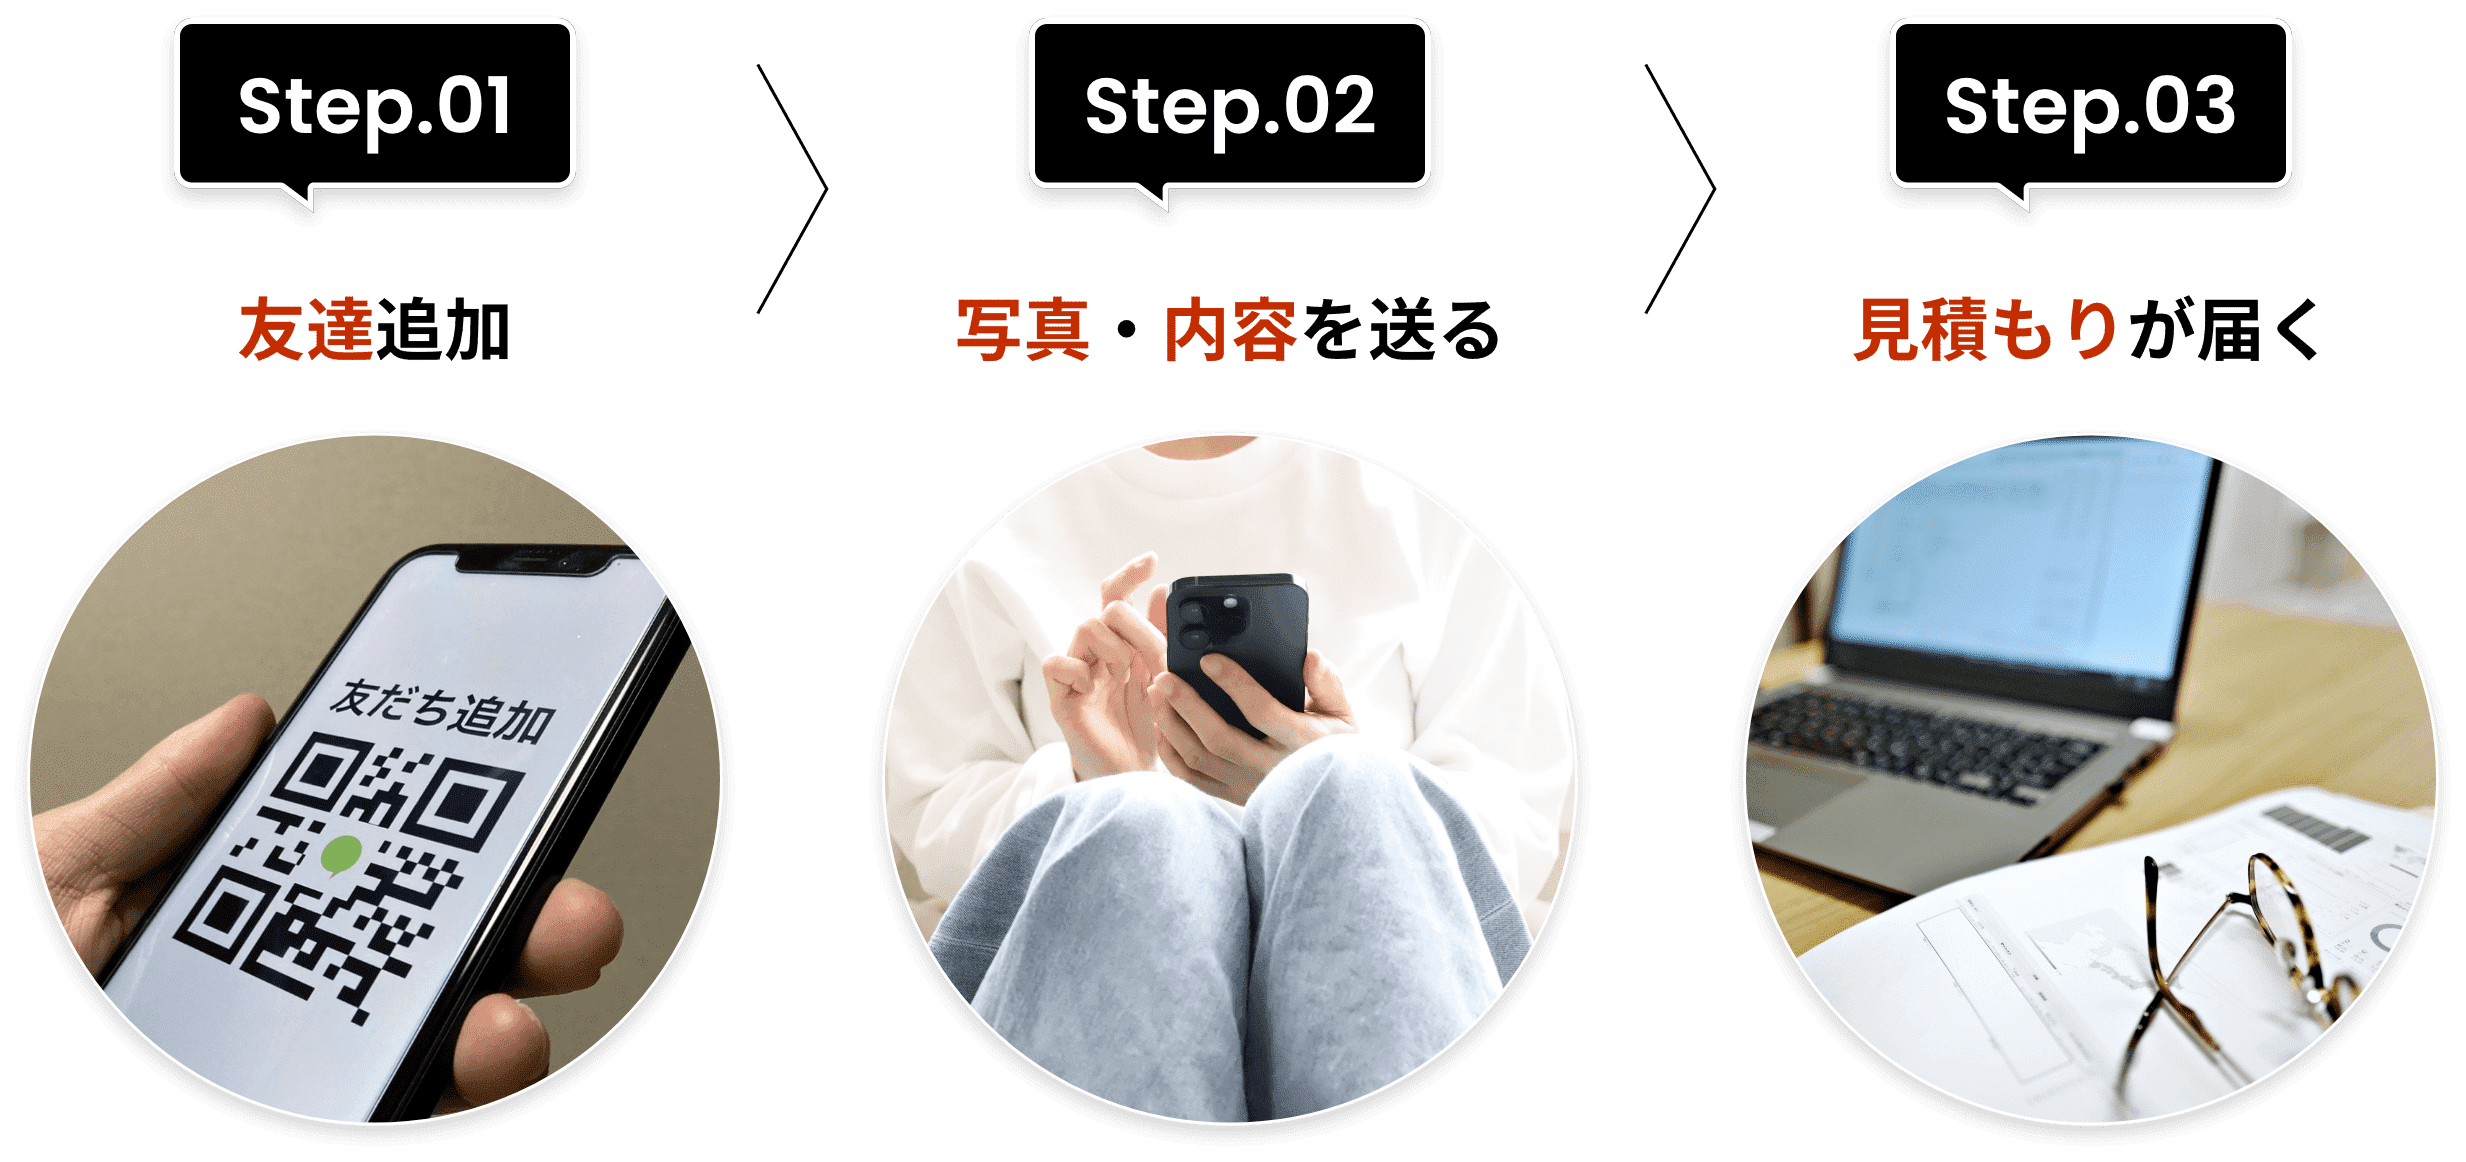 Step.01友達追加、Step.02写真・内容を送る、Step.03見積もりが届く